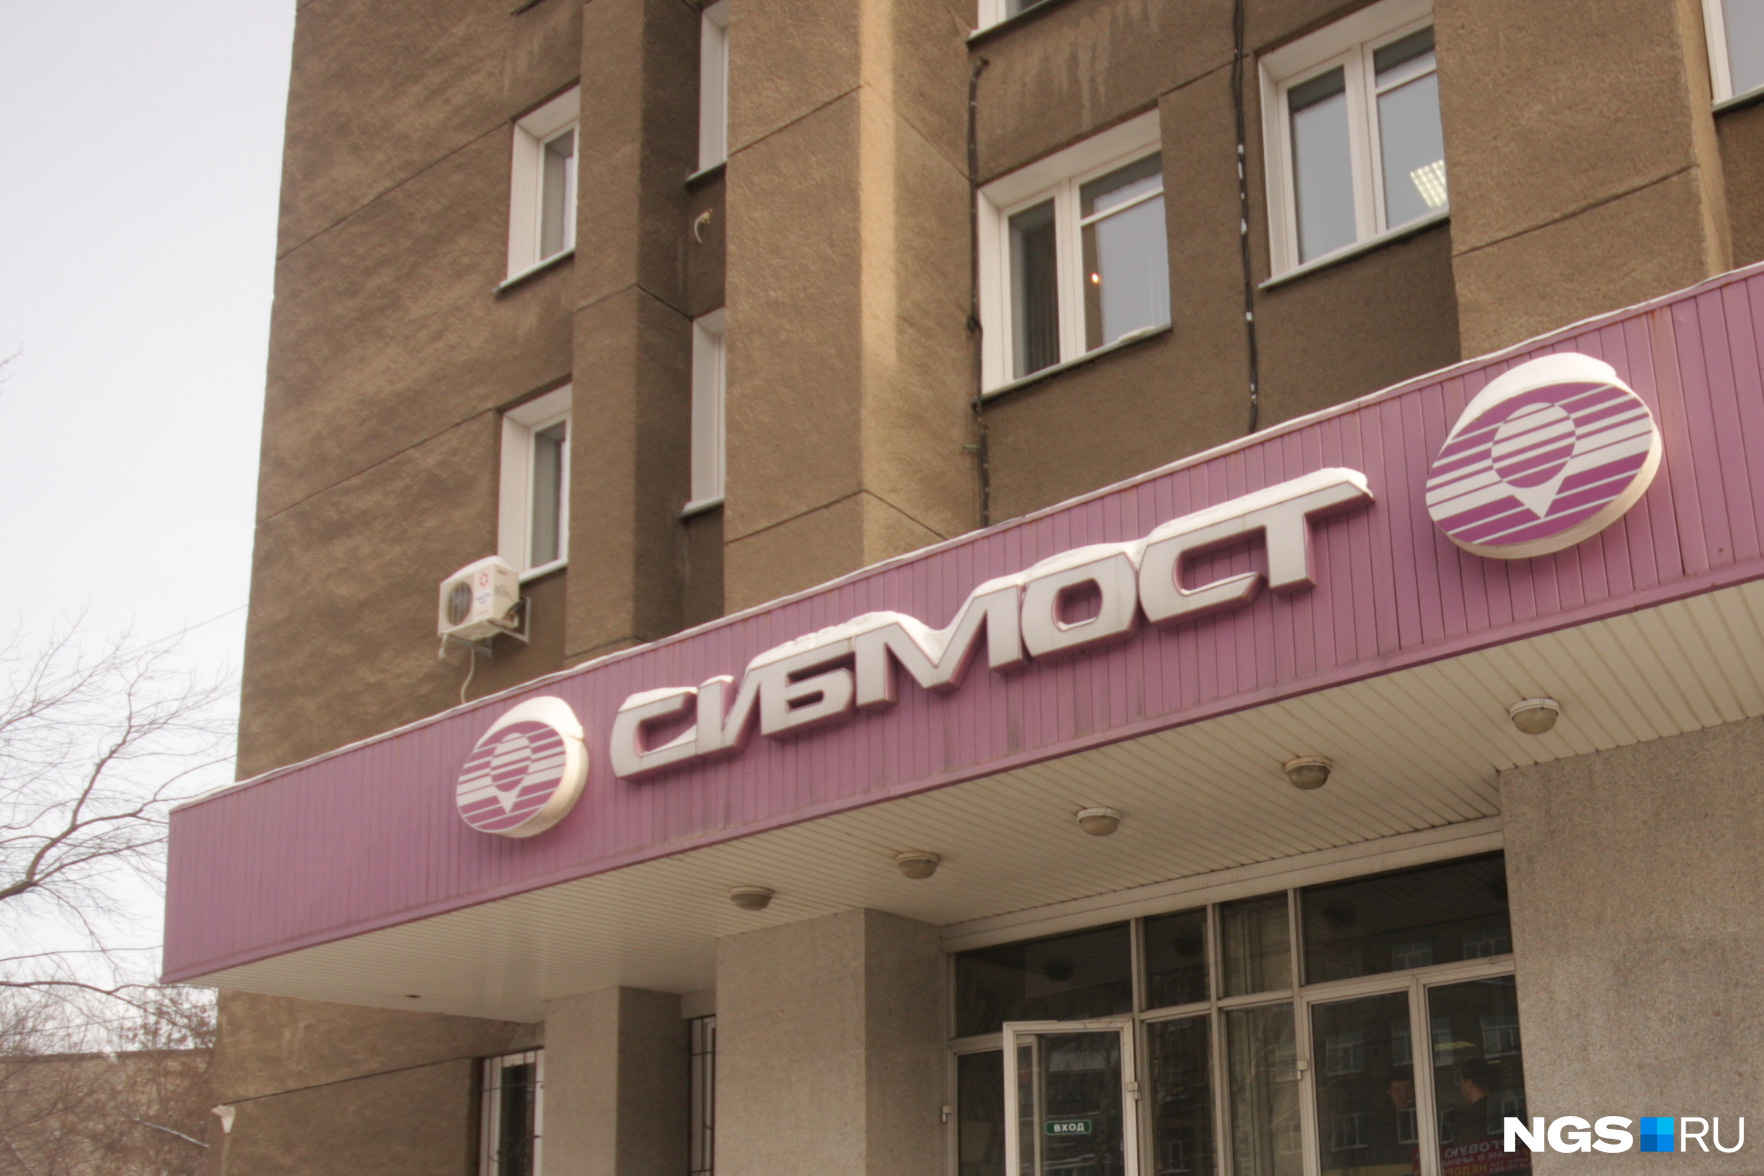 Офис «Сибмоста» на проспекте Димитрова